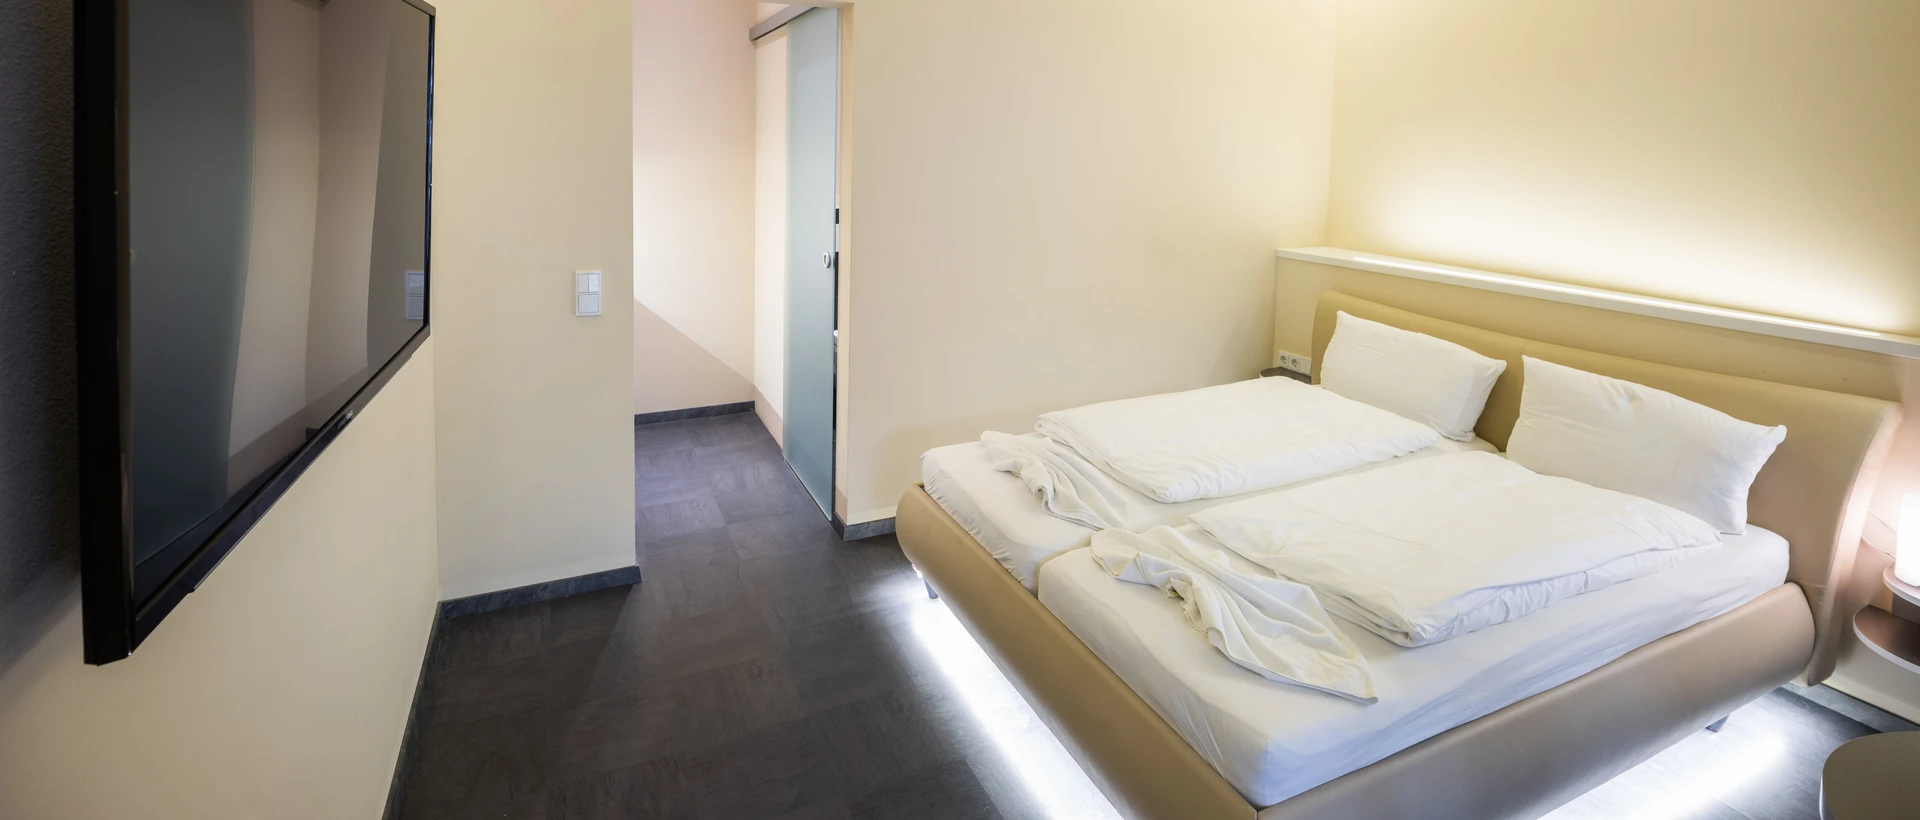 Quarto para alugar num apartamento partilhado em Heidelberg